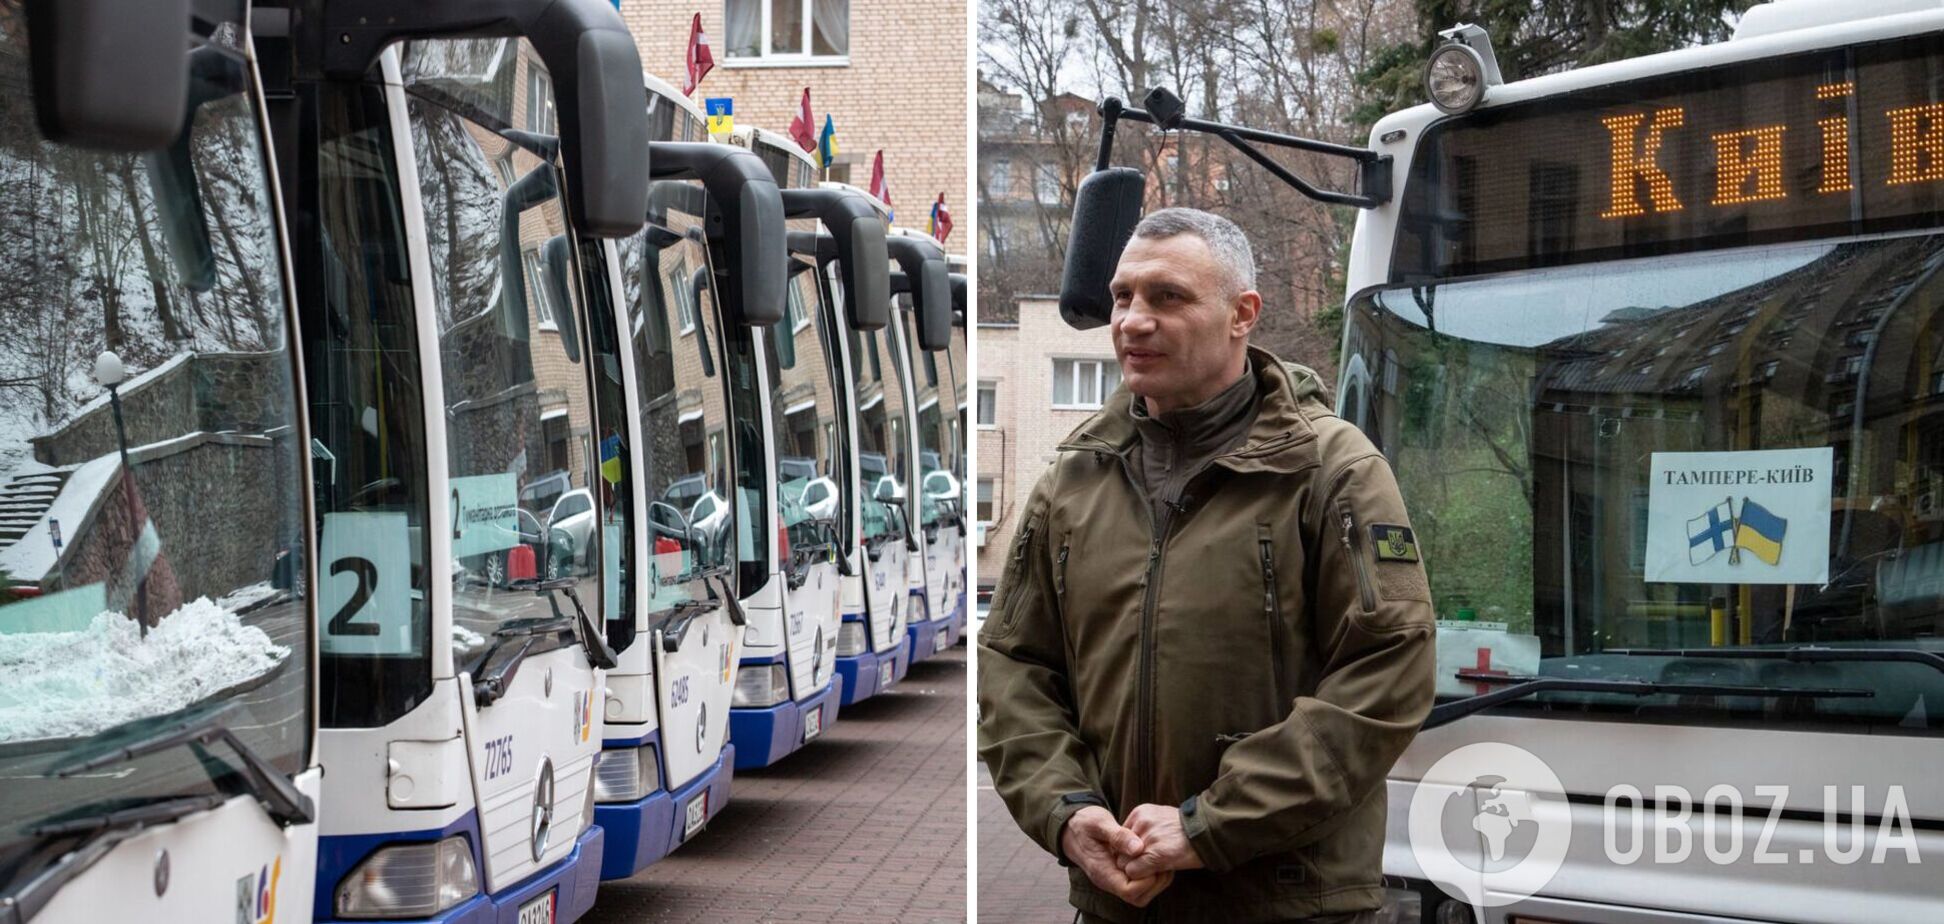 Завтра на городские маршруты выйдут еще 13 автобусов, полученных Киевом от международных партнеров, – Кличко